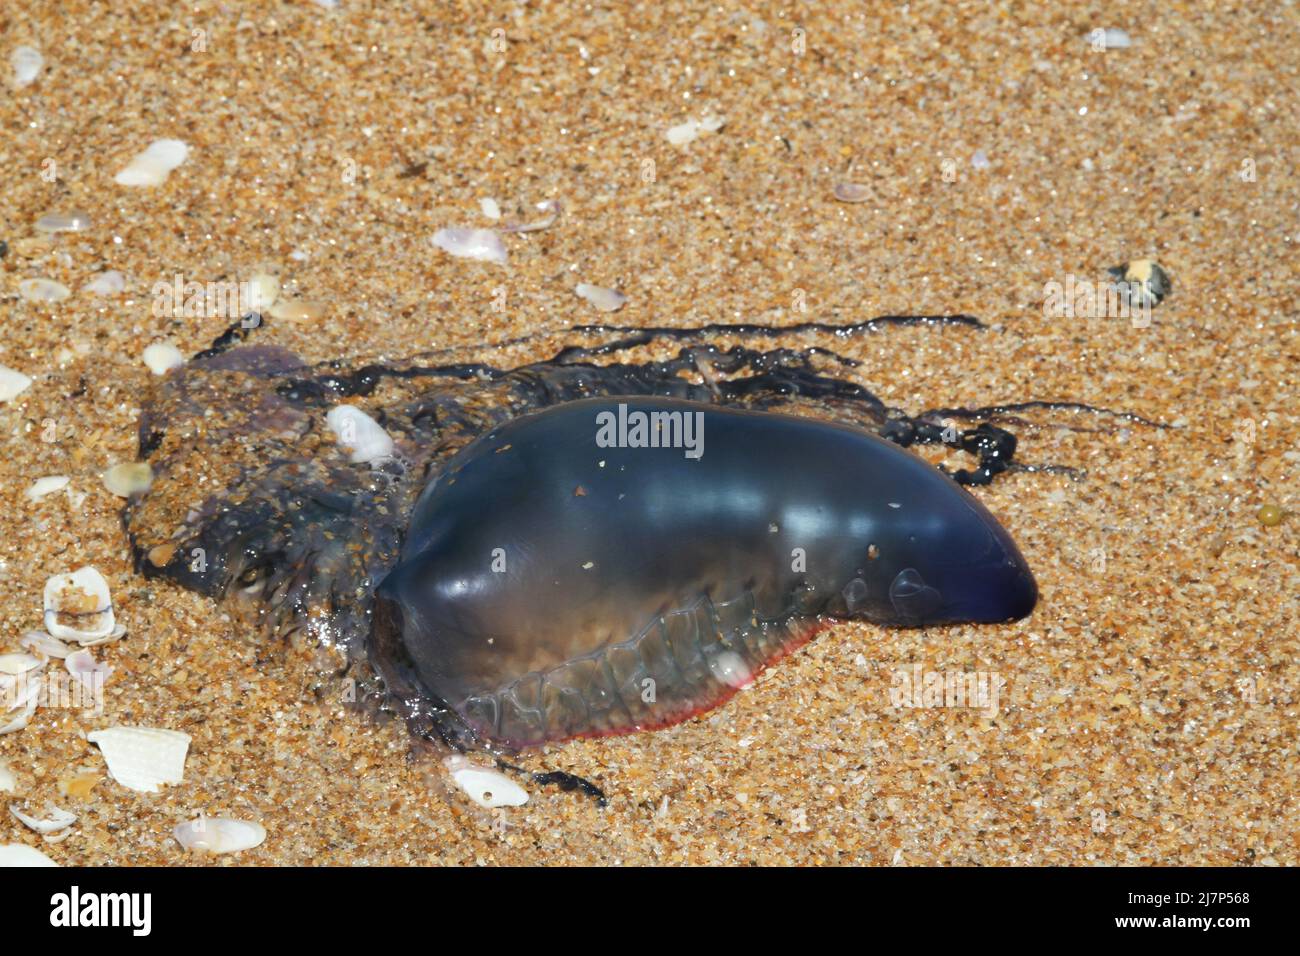 Giftige Tentakeln neben gefährlichen Blaubottchen portugiesischen Mann o Krieg Quallen Tier auf Sand Strand Bilder Stockfoto